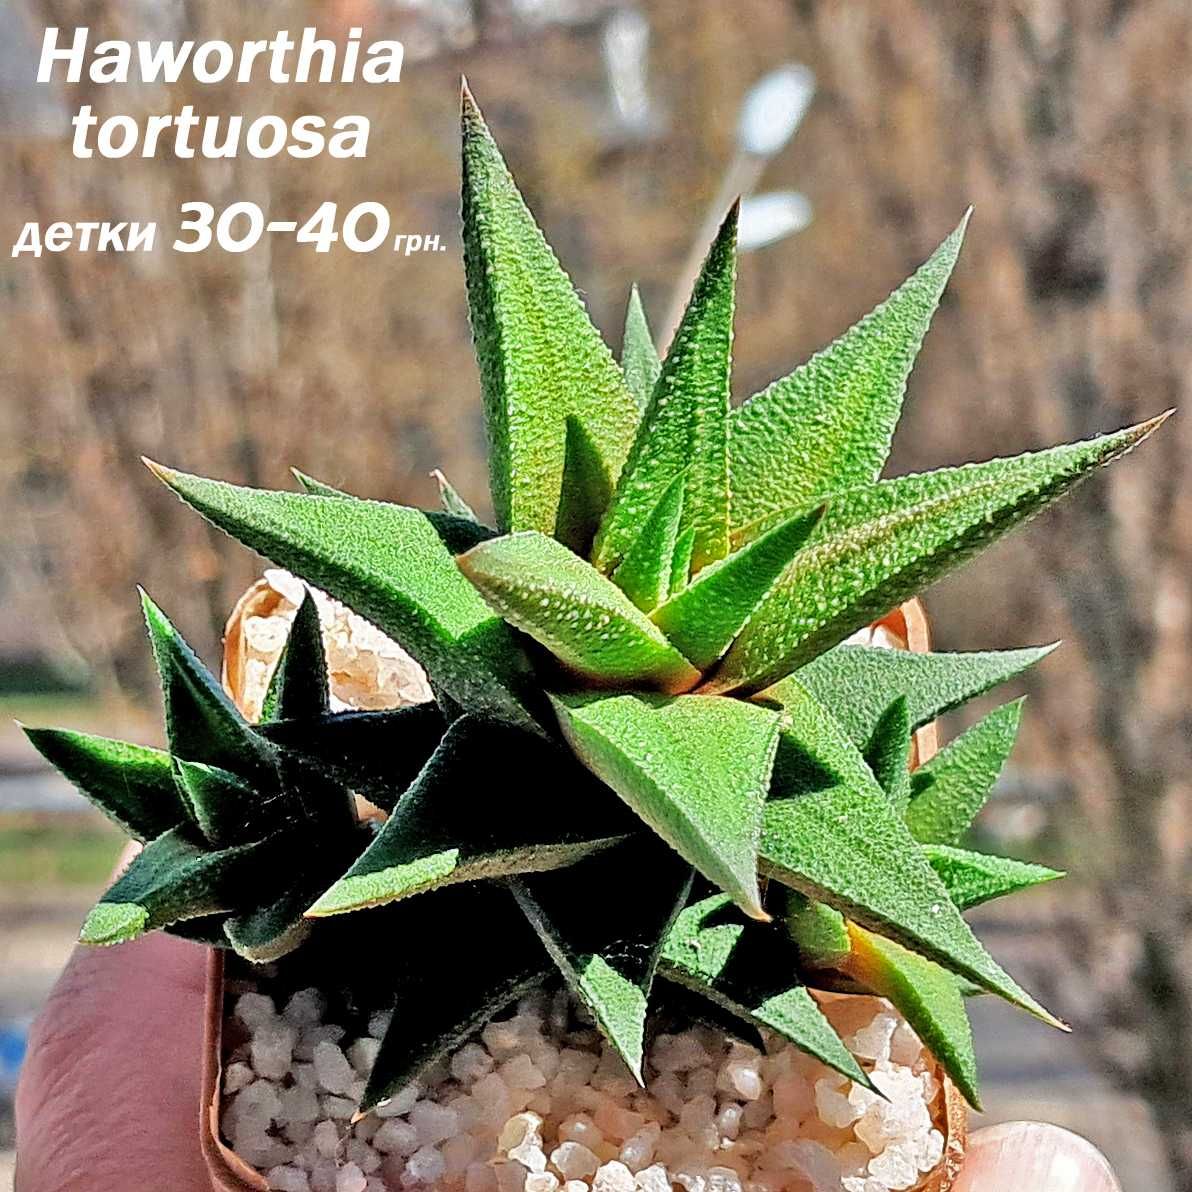 Хавортии (Haworthia), кактусы и другие суккулентные